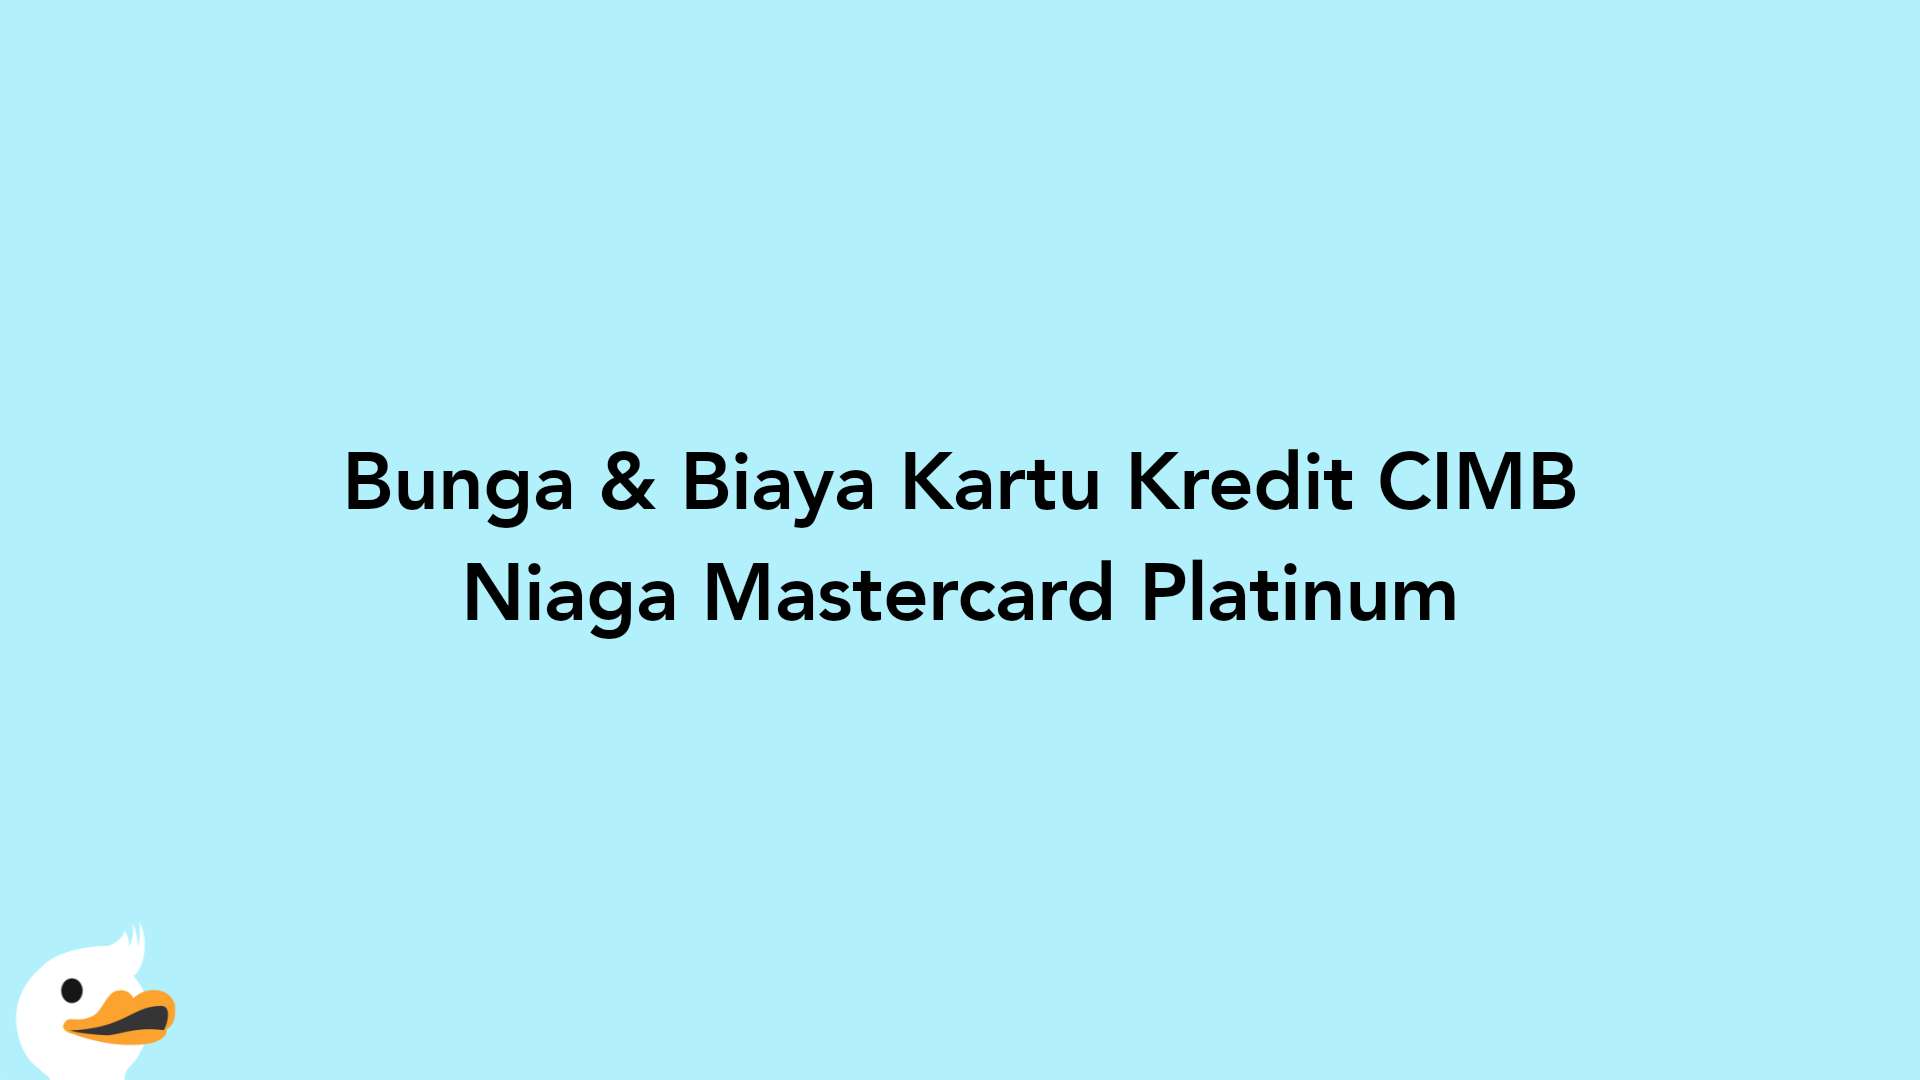 Bunga & Biaya Kartu Kredit CIMB Niaga Mastercard Platinum